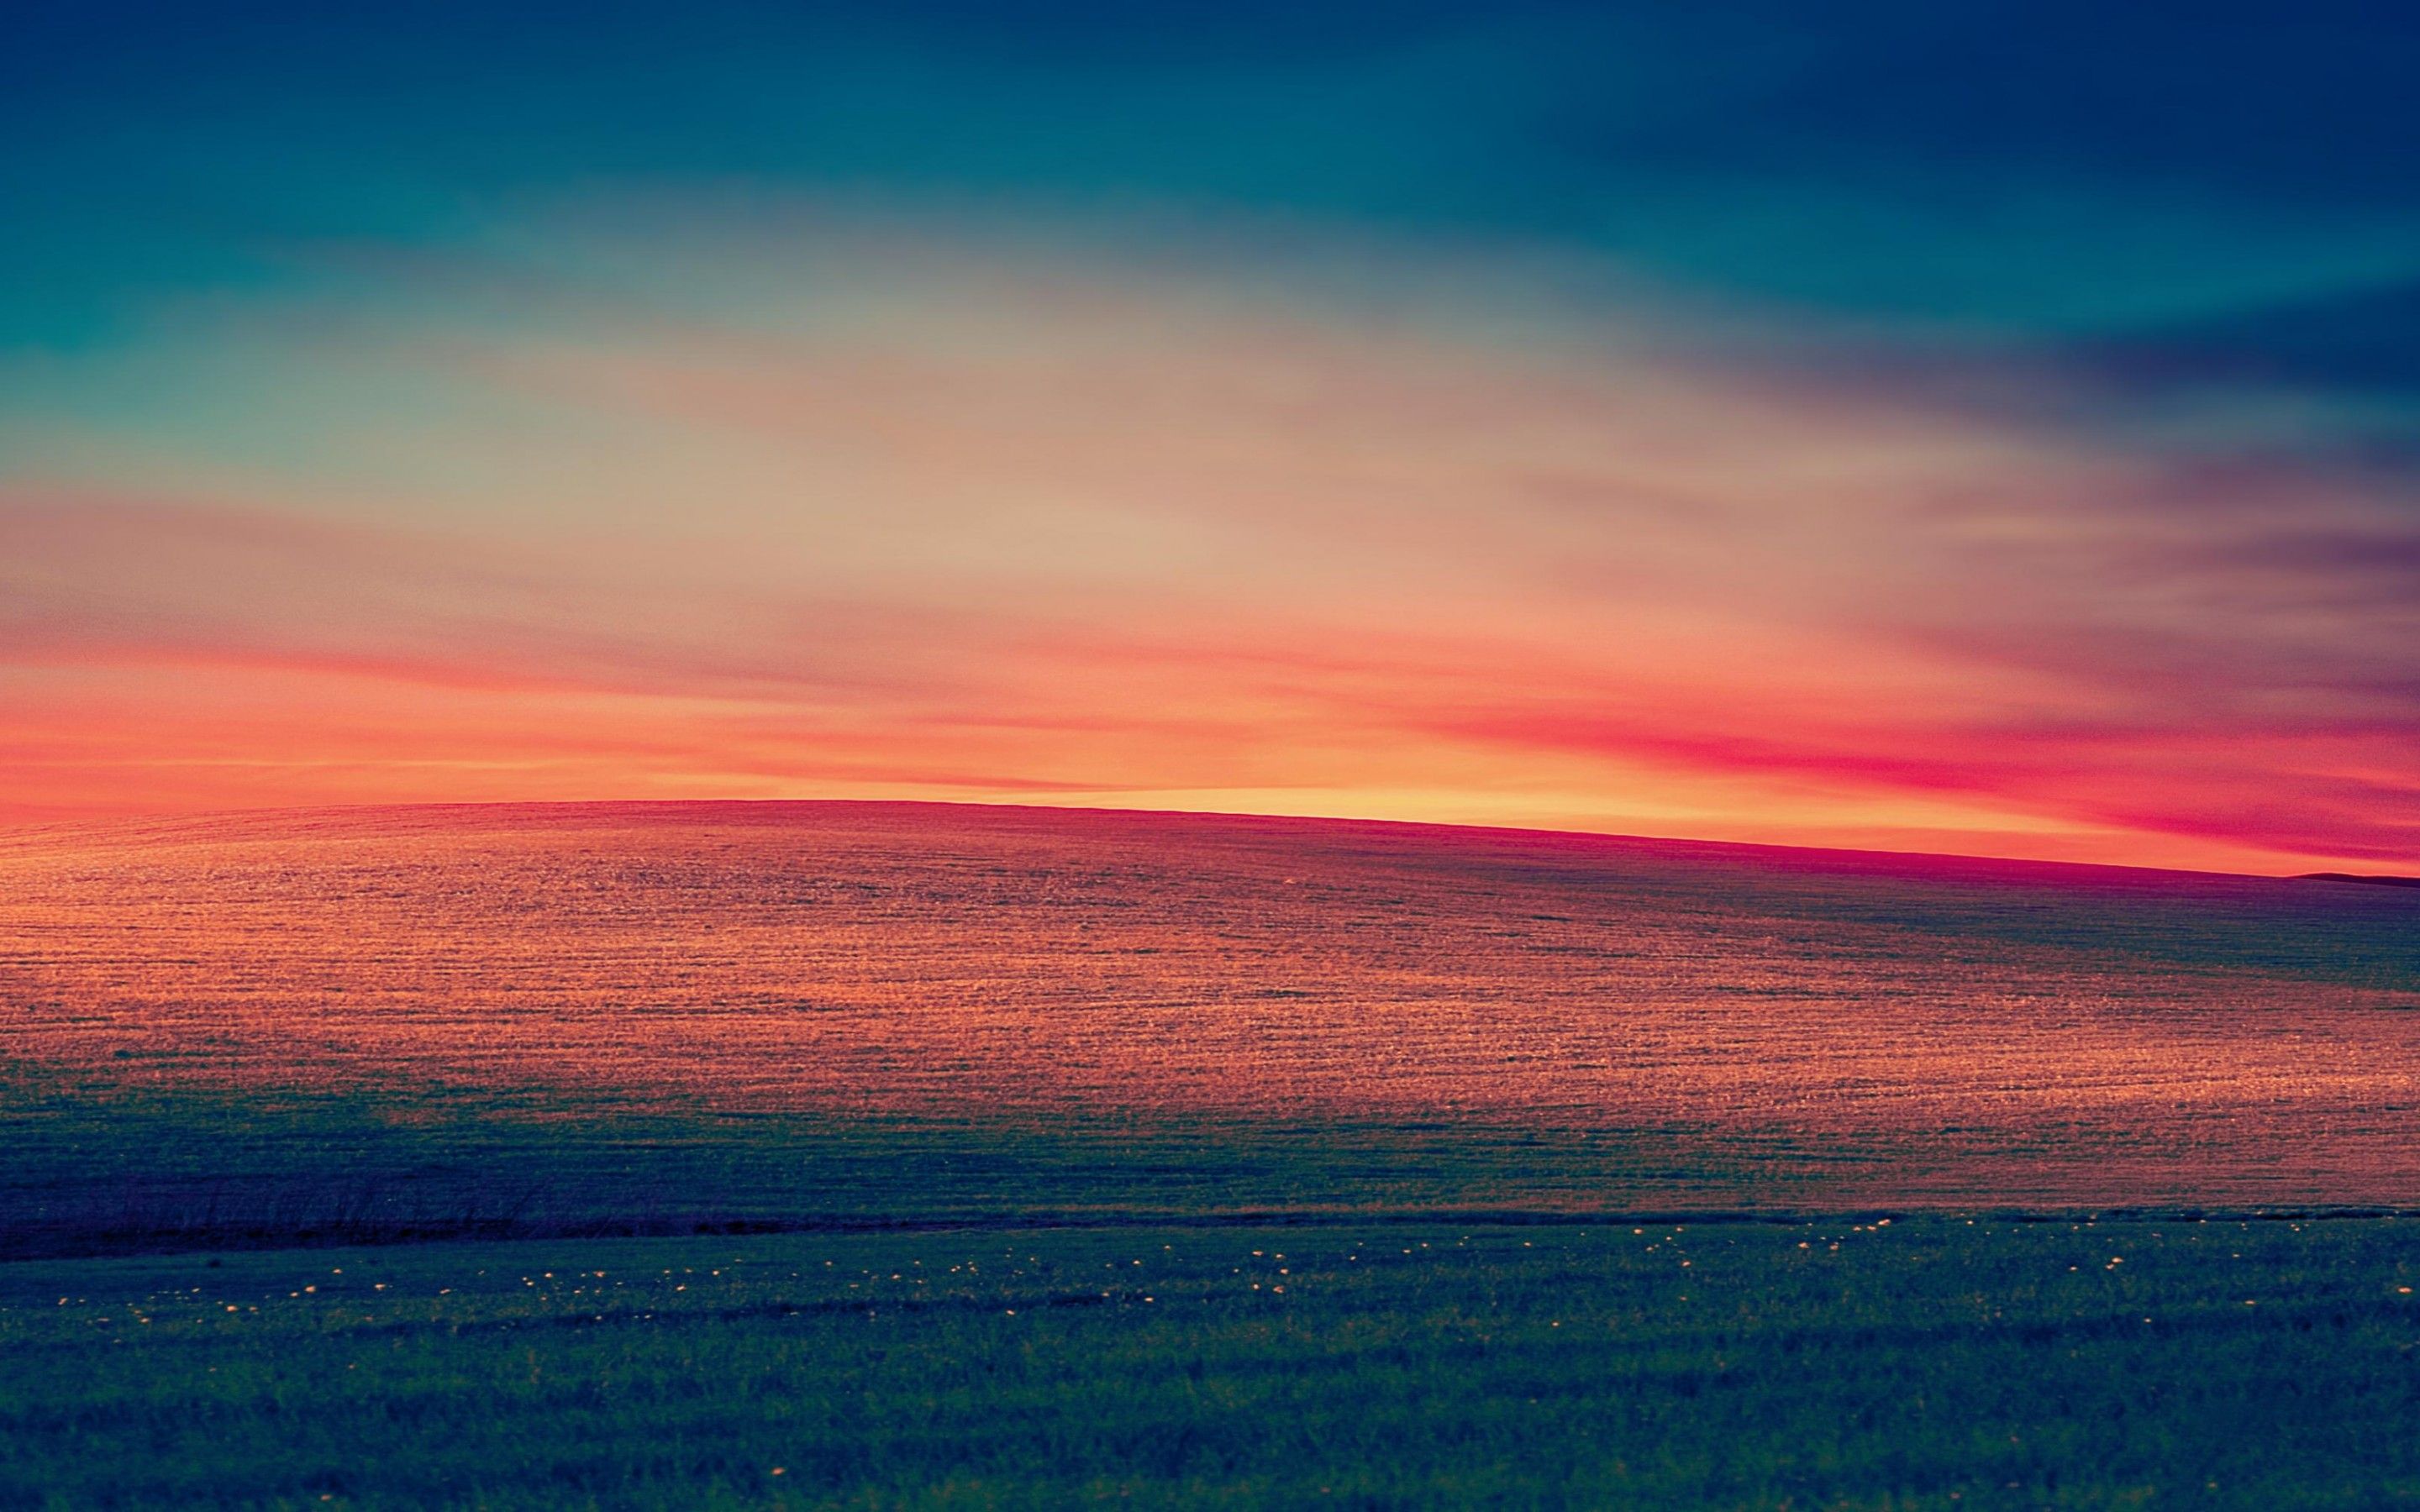 Windows XP 4K Wallpaper, Landscape, Hills, Morning, Day light, Stock, Aesthetic, Nature